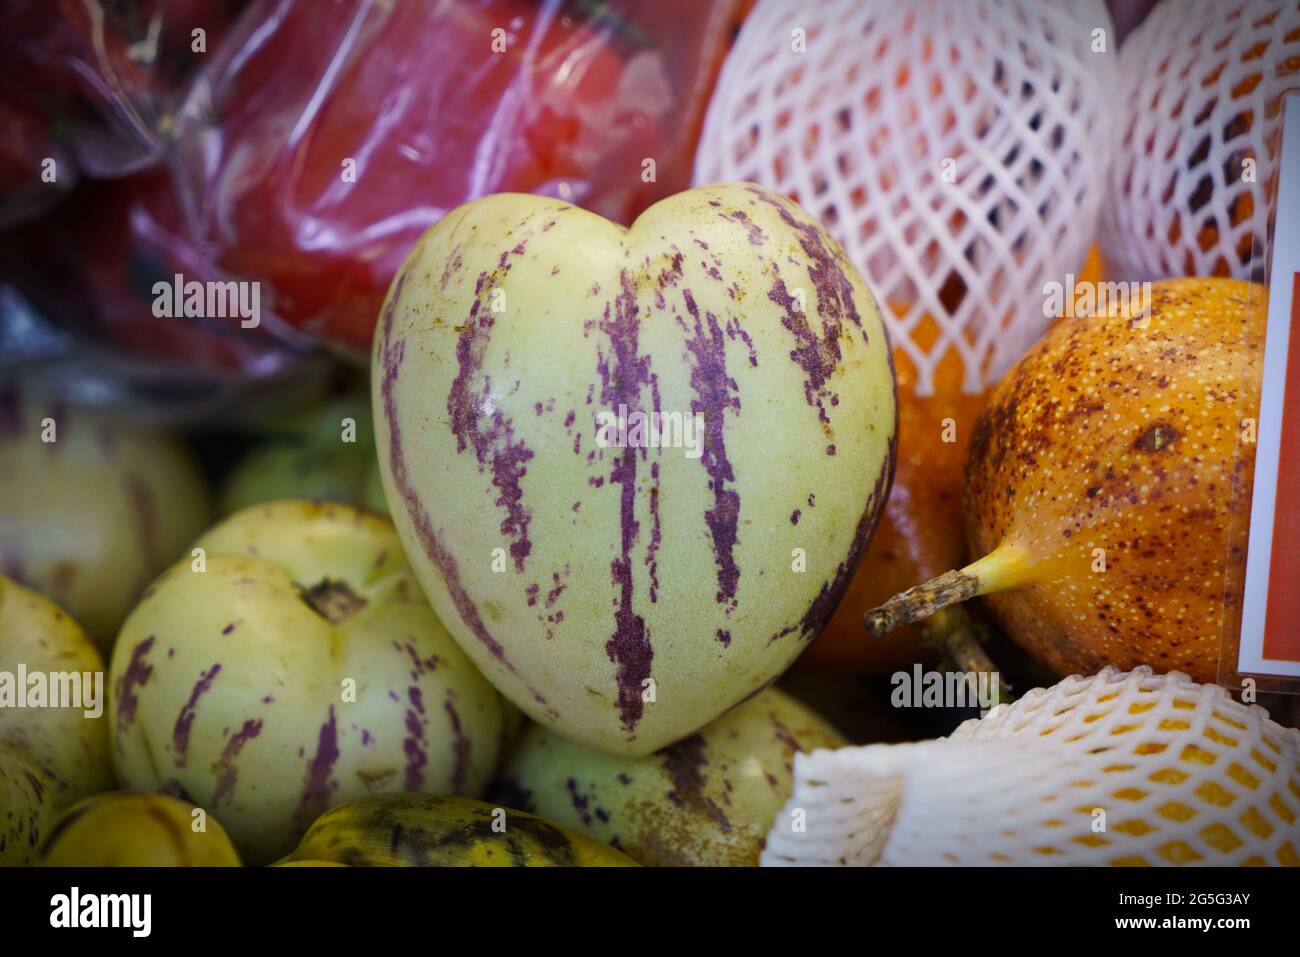 Le fruit en forme de coeur, originaire de l'Amérique du Sud, est appelé dulce de pepino - concombre doux - ou même simplement melon de poire. Banque D'Images